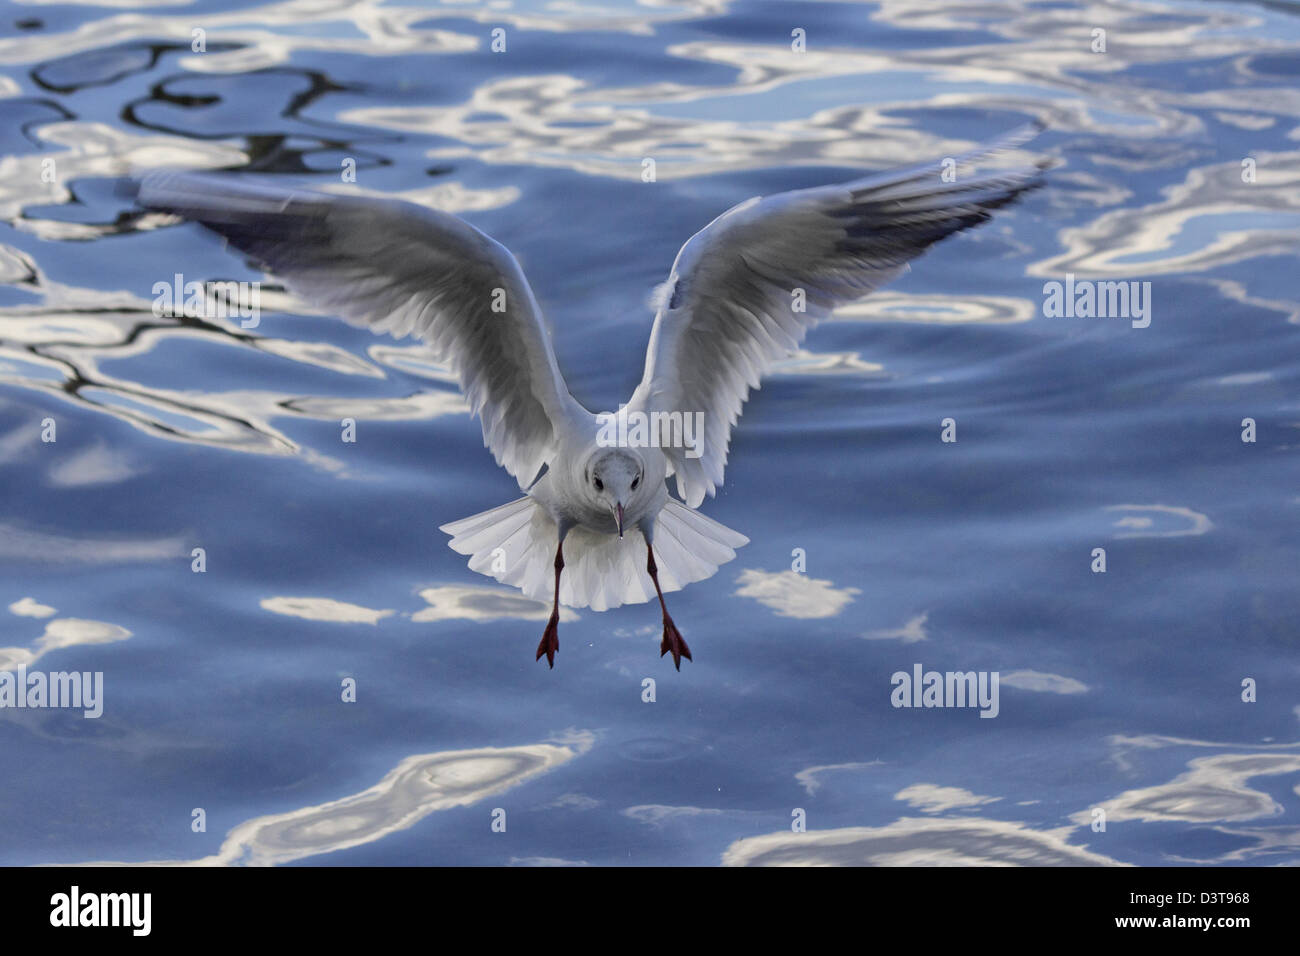 Kittiwake, Seagull landing on water Stock Photo